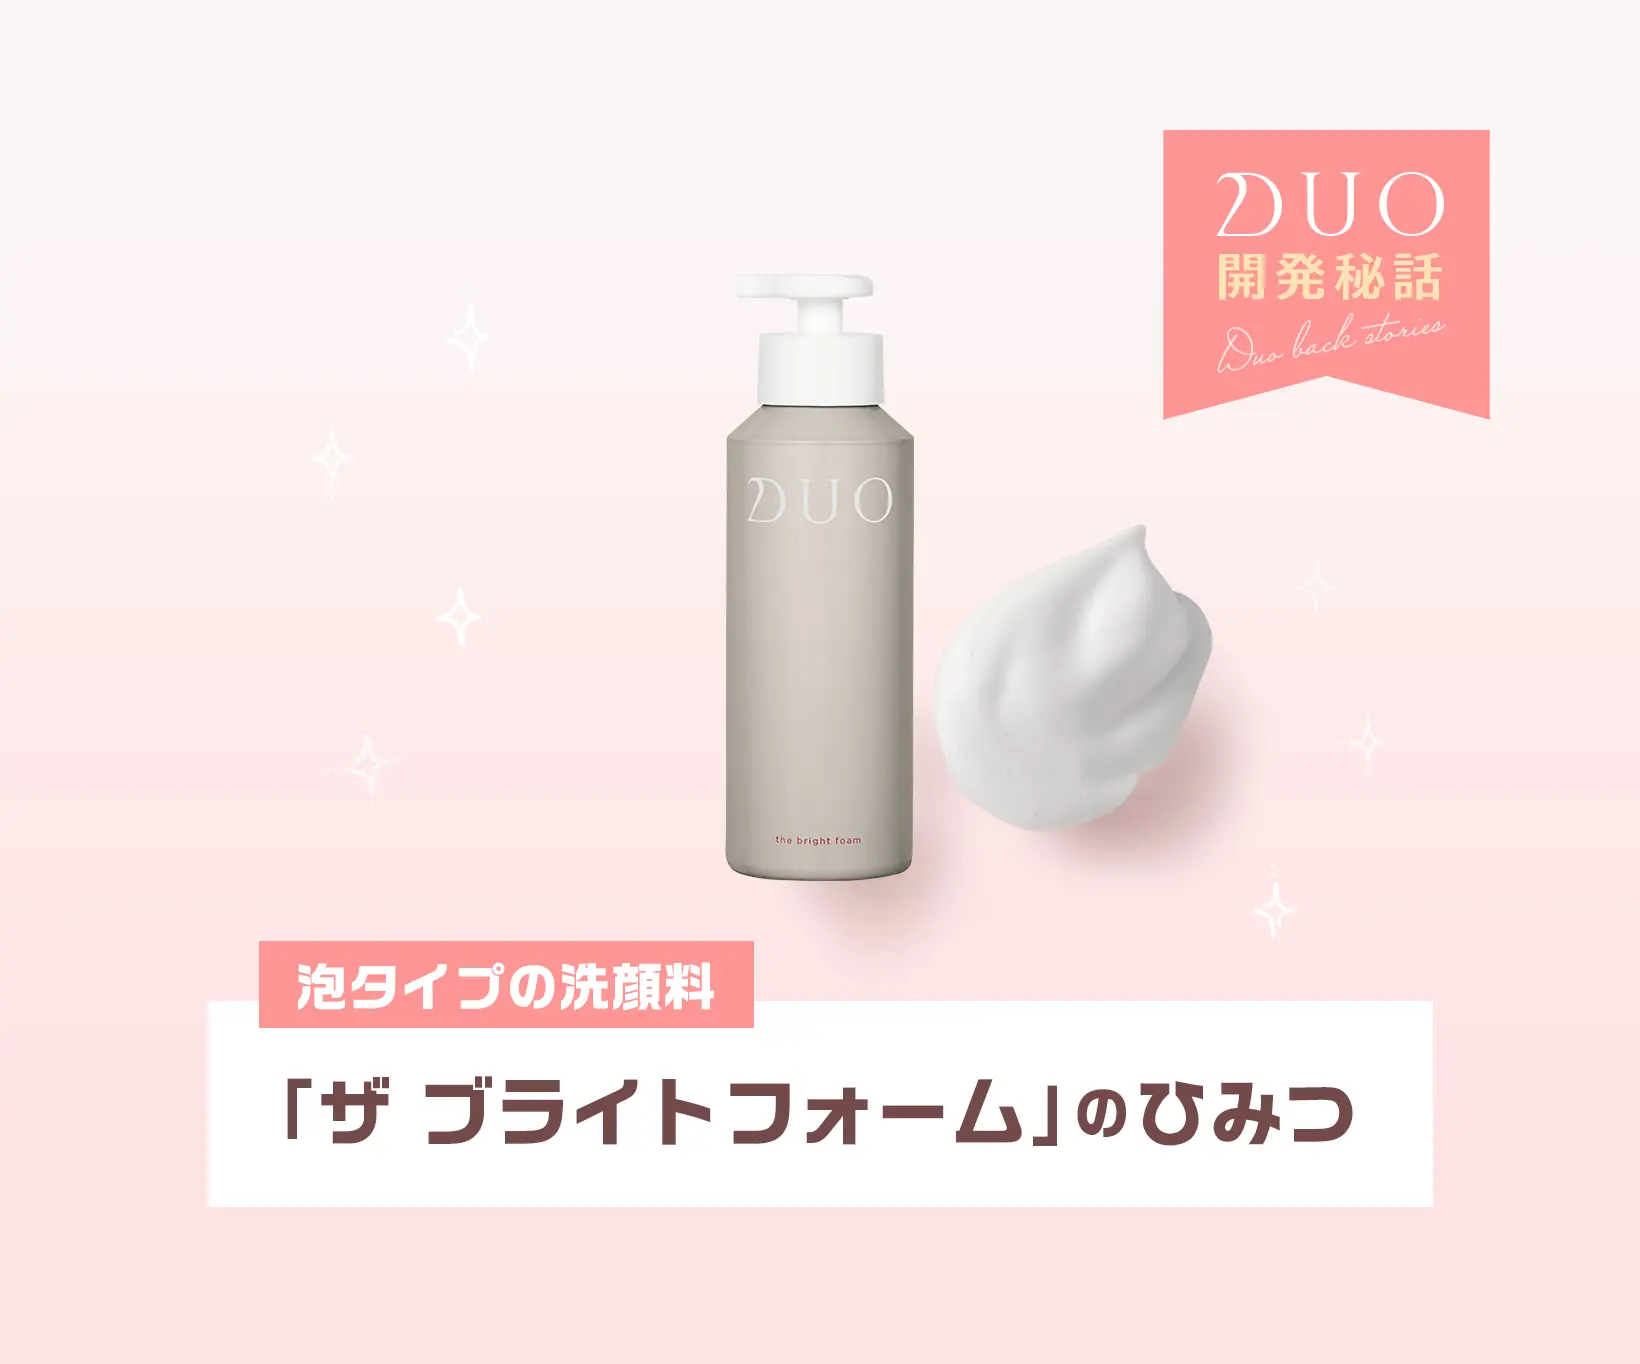 一流の品質 D.U.O. ザ ブライトフォーム〈泡状洗顔料〉100g general-bond.co.jp